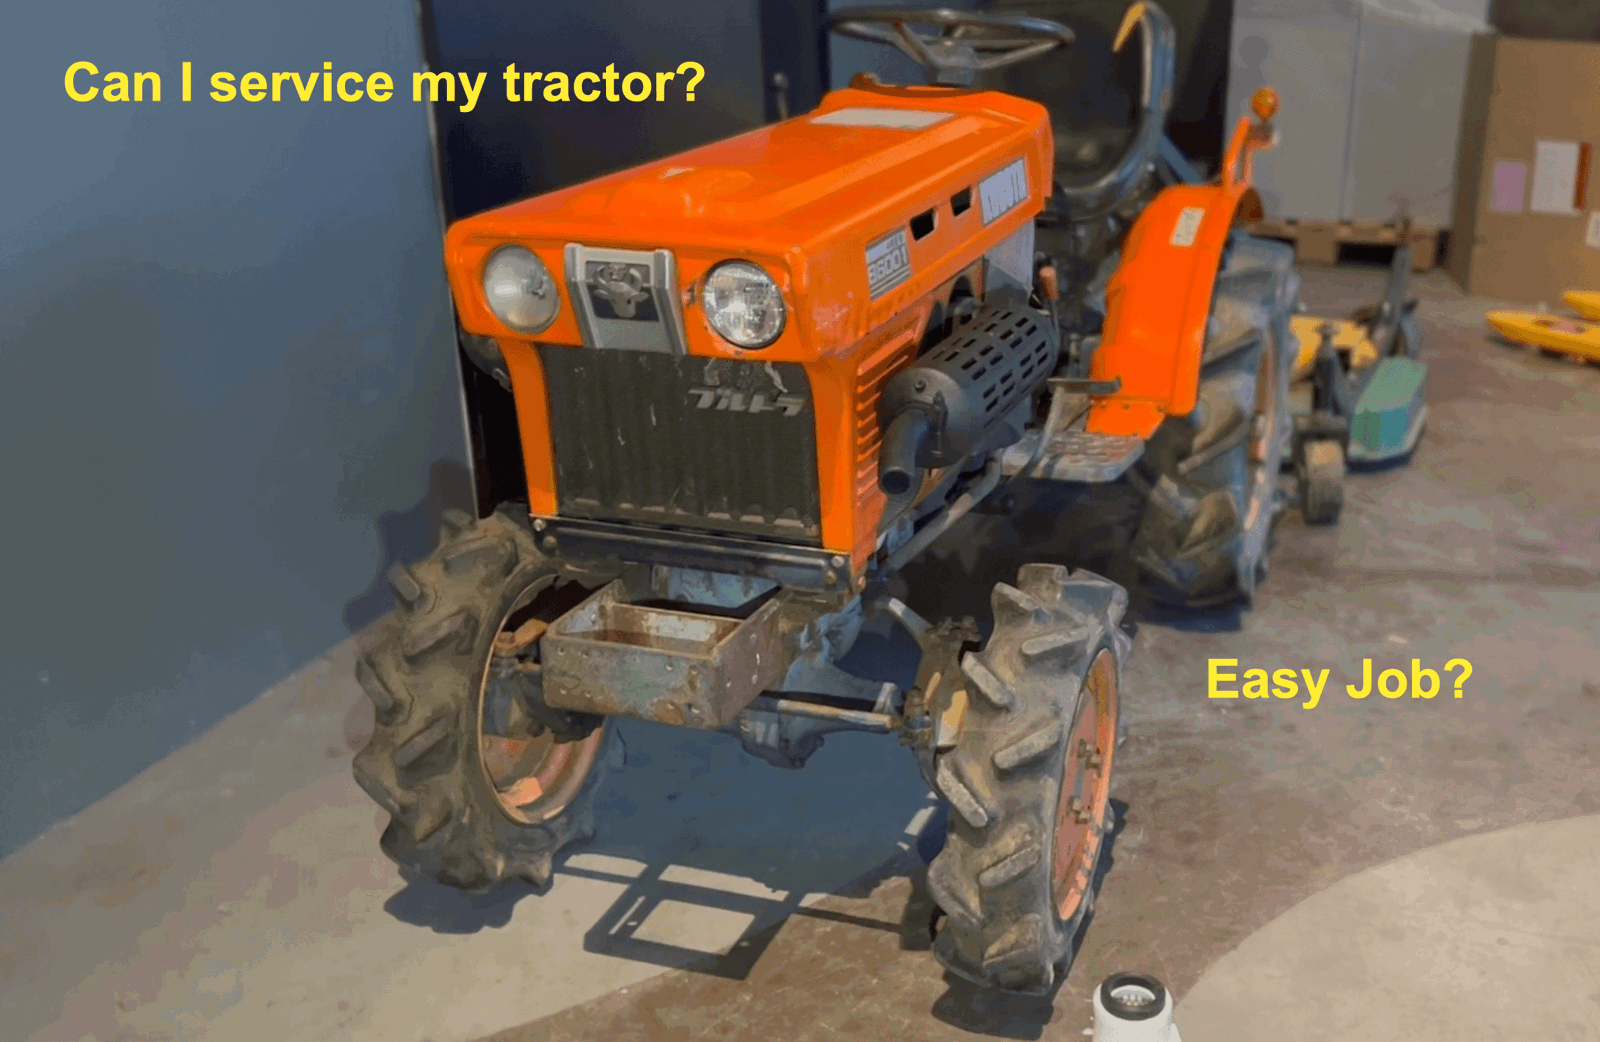 Changer soi-même les filtres de son mini-tracteur – C’est facile ?